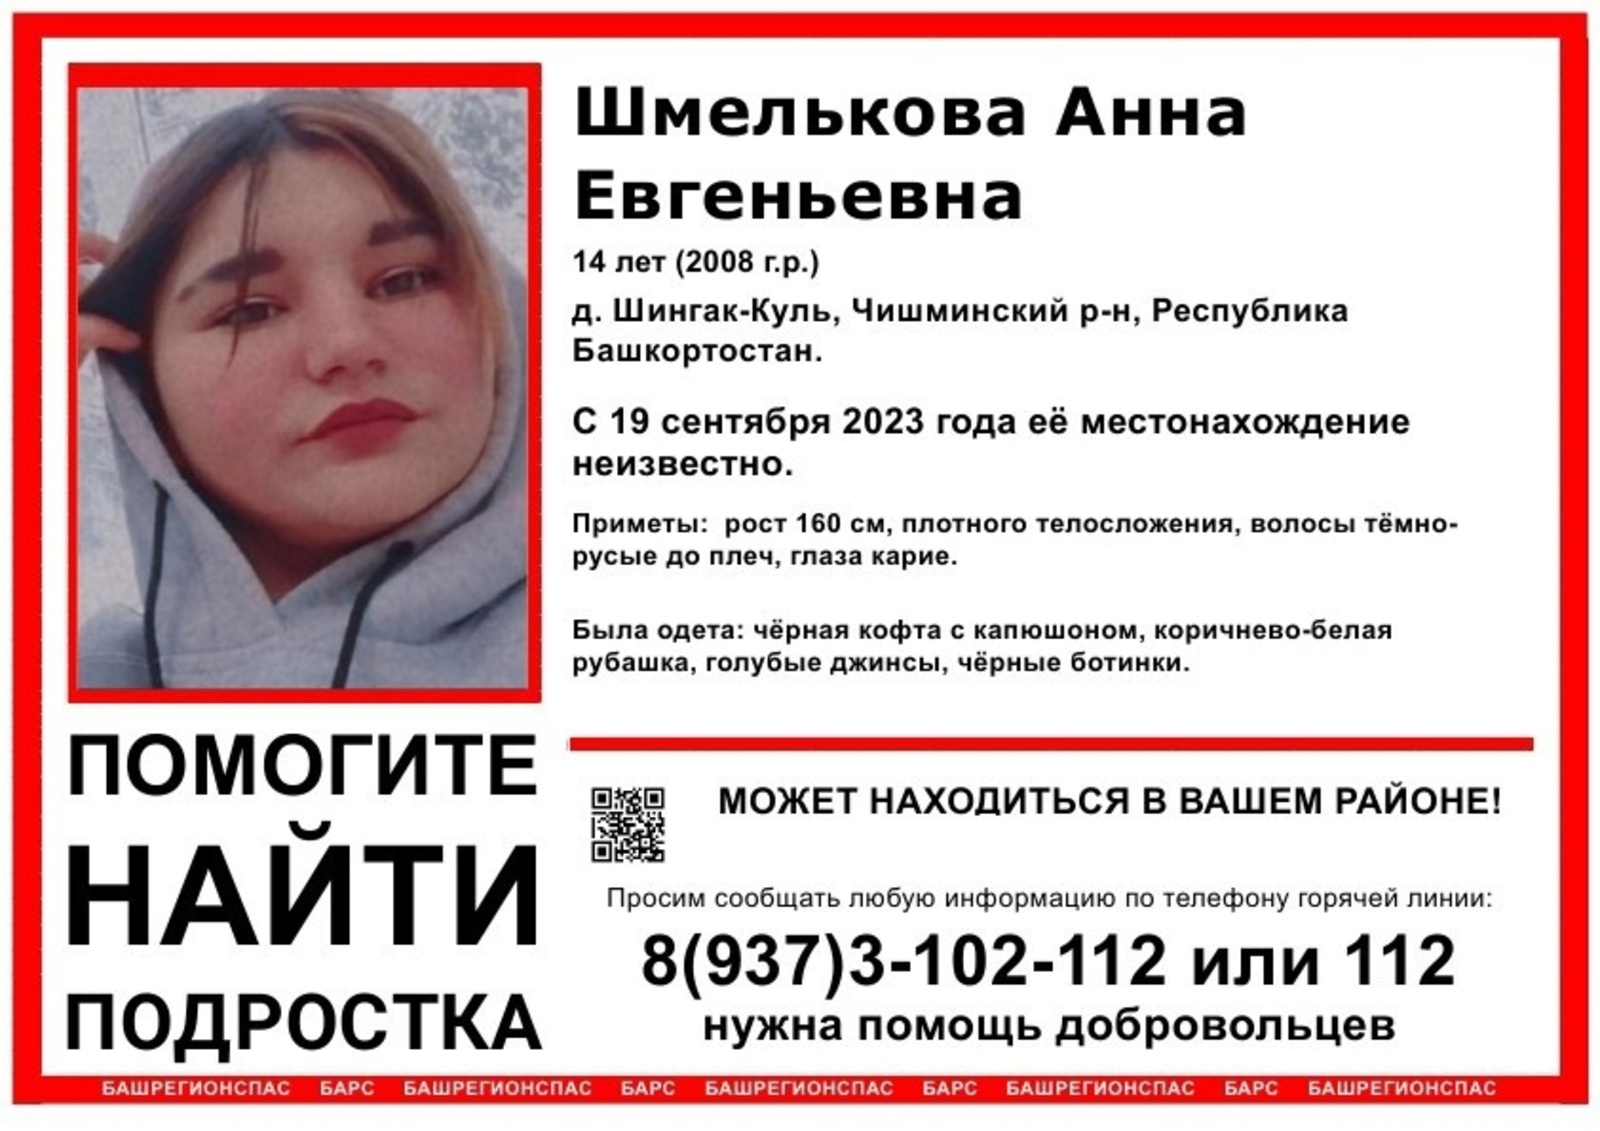 В Башкирии вторые сутки ищут 14-летнюю девочку. Сегодня в Уфе пропала ещё одна — 12 летняя